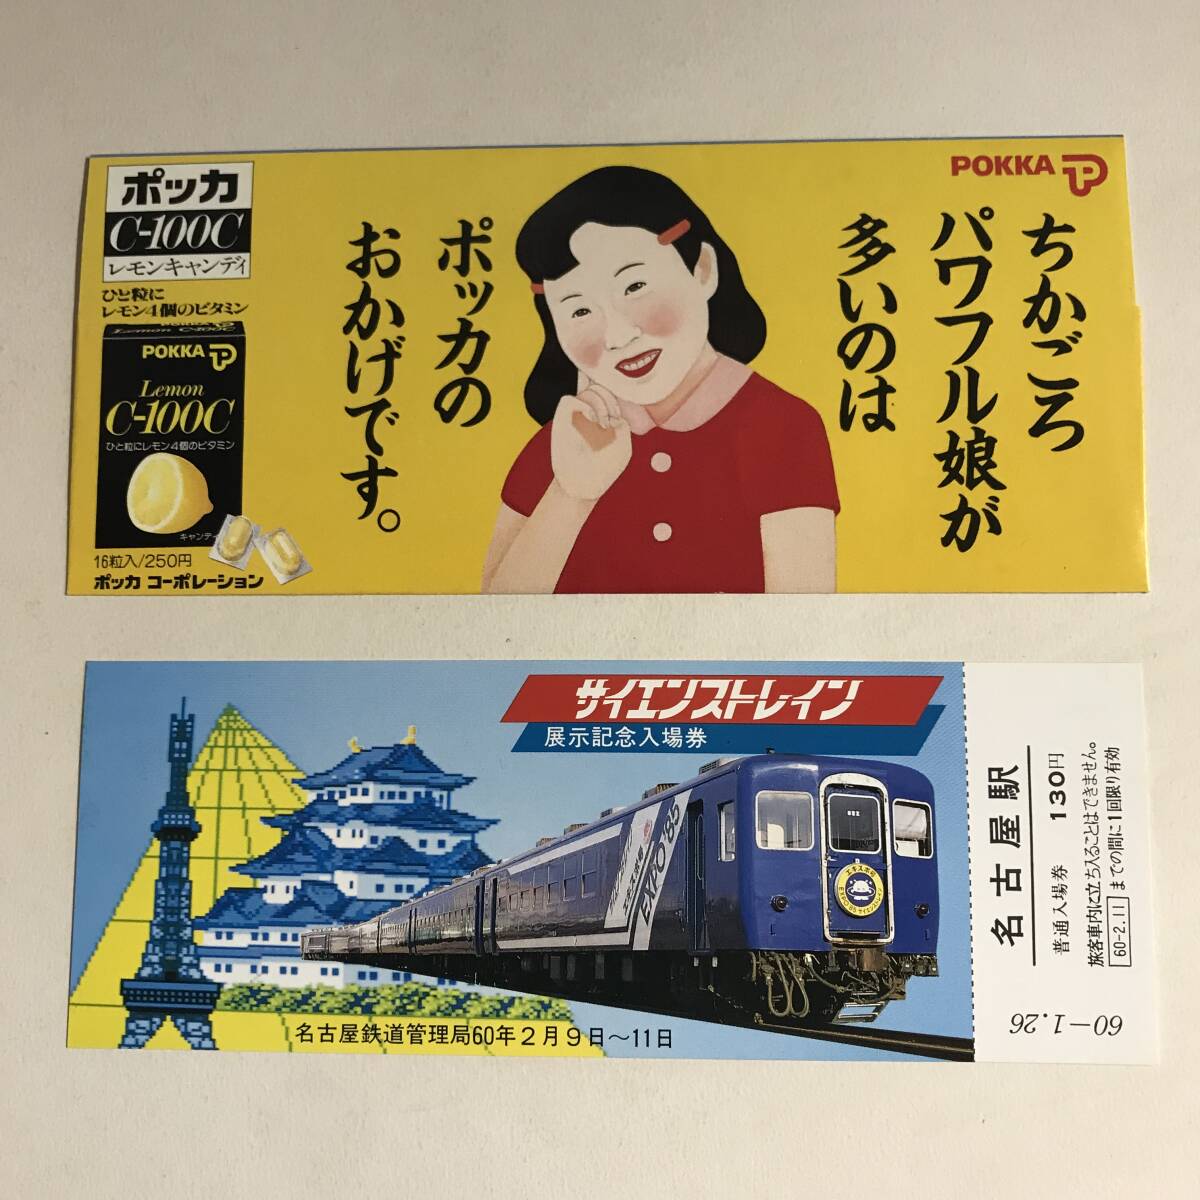 昭和60年 サイエンストレイン 展示記念入場券 名古屋鉄道管理局 未使用 @S-A-C